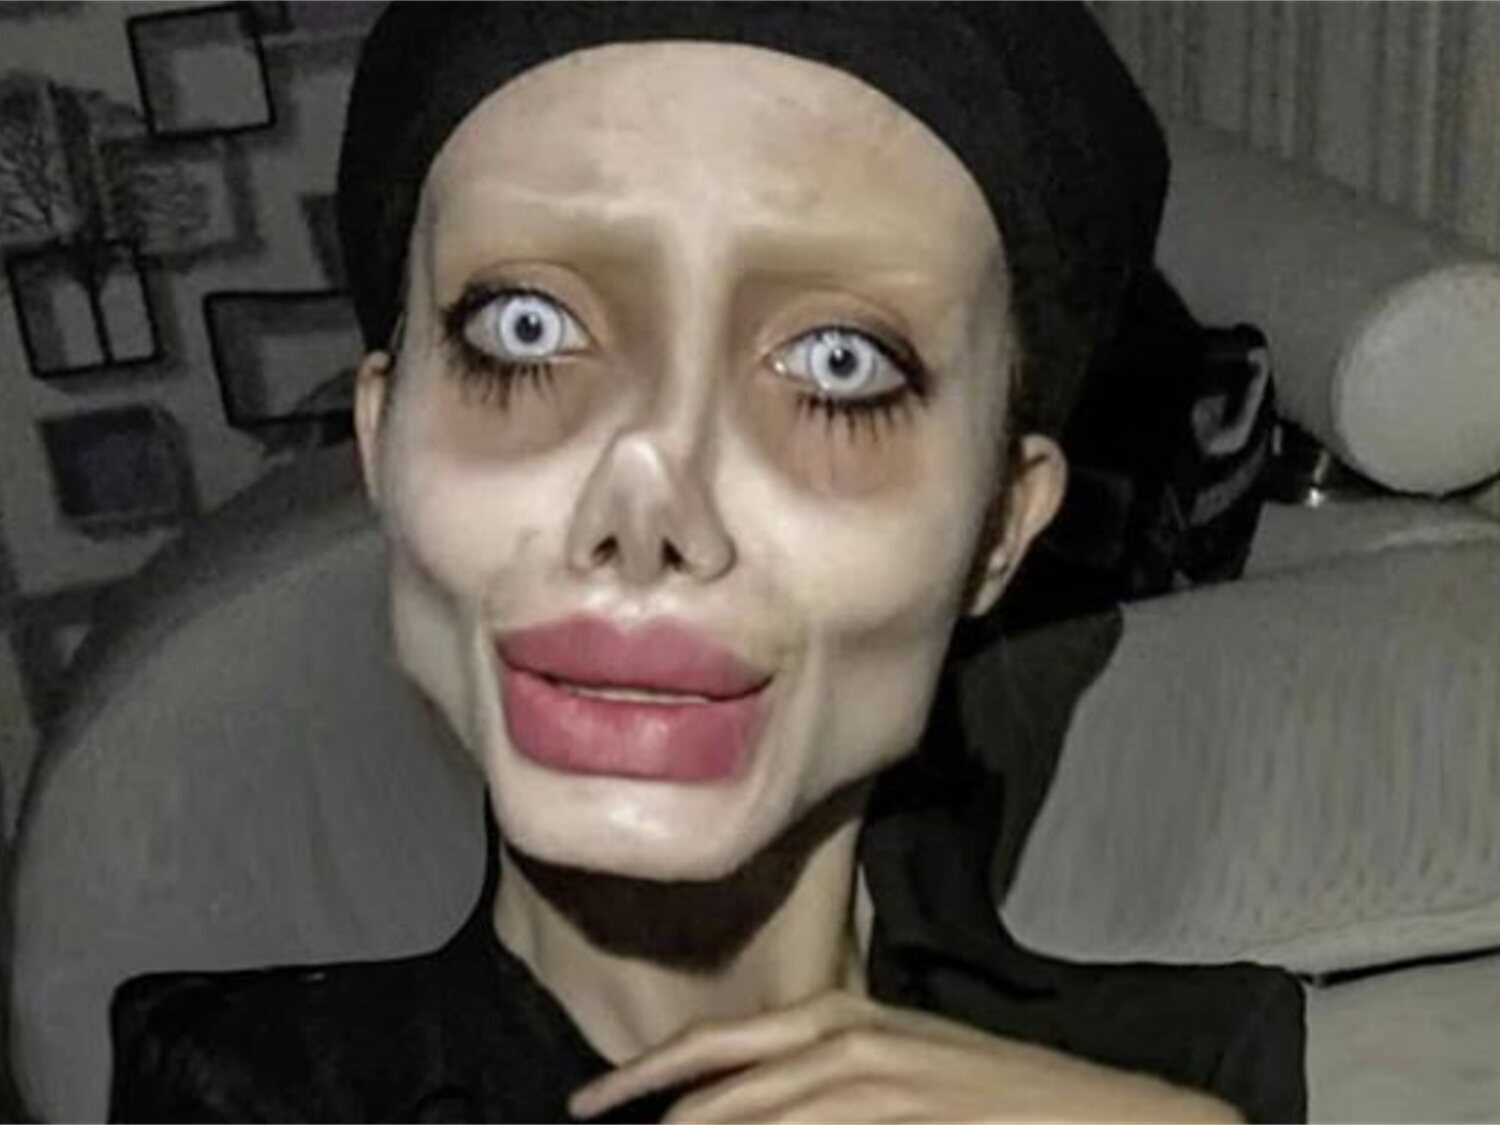 El impactante aspecto de la 'Angelina Jolie zombie' iraní a su salida de la cárcel